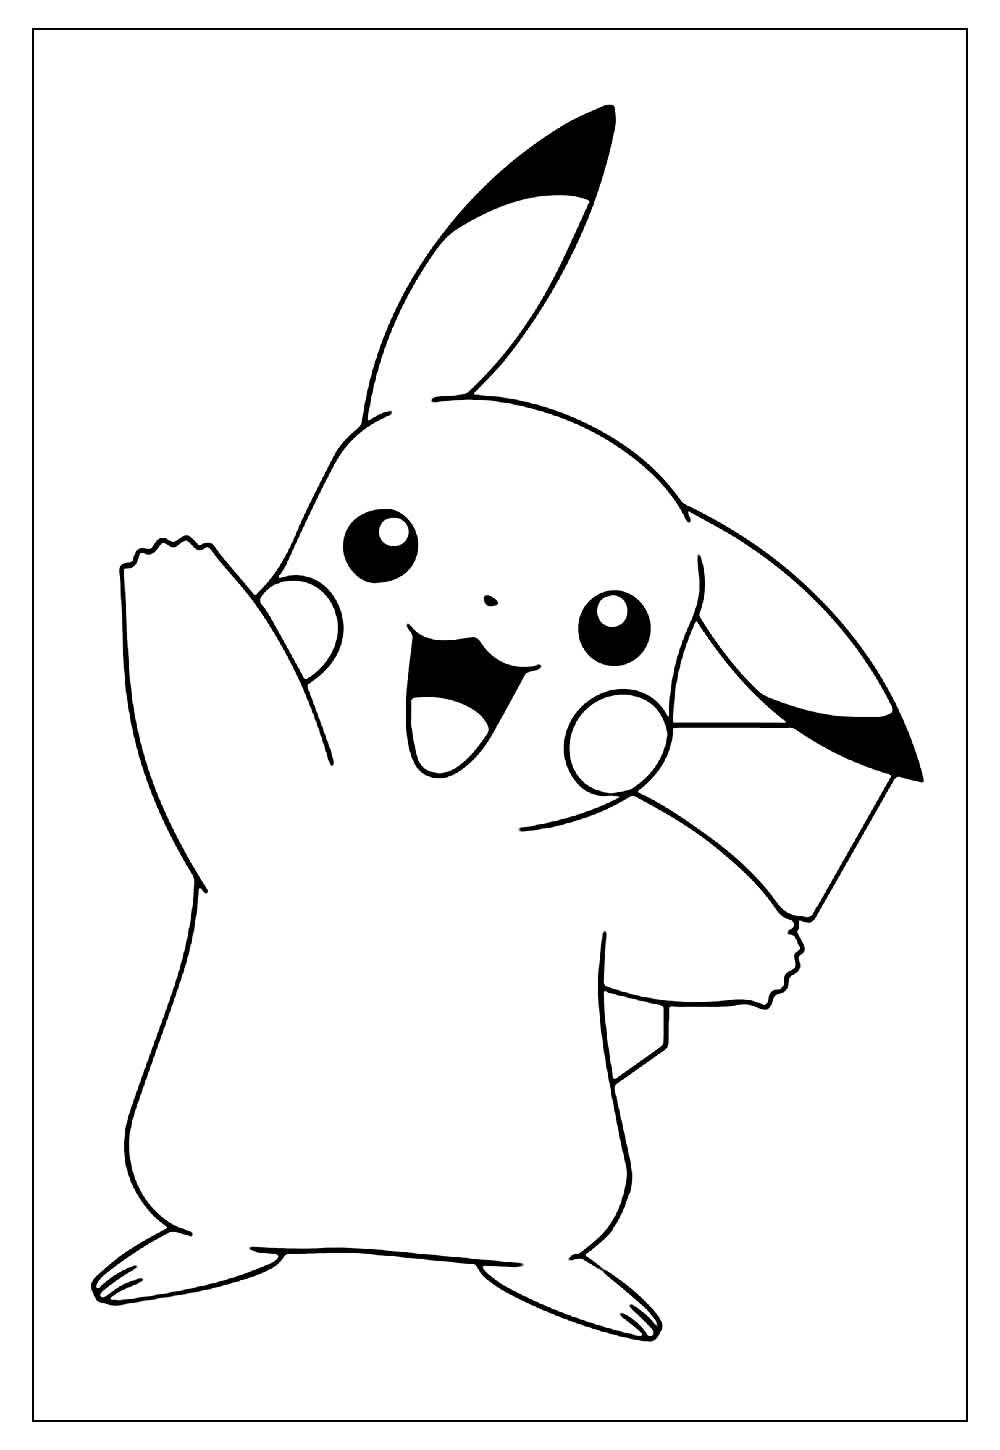 Desenhos do Pikachu para colorir - Bora Colorir